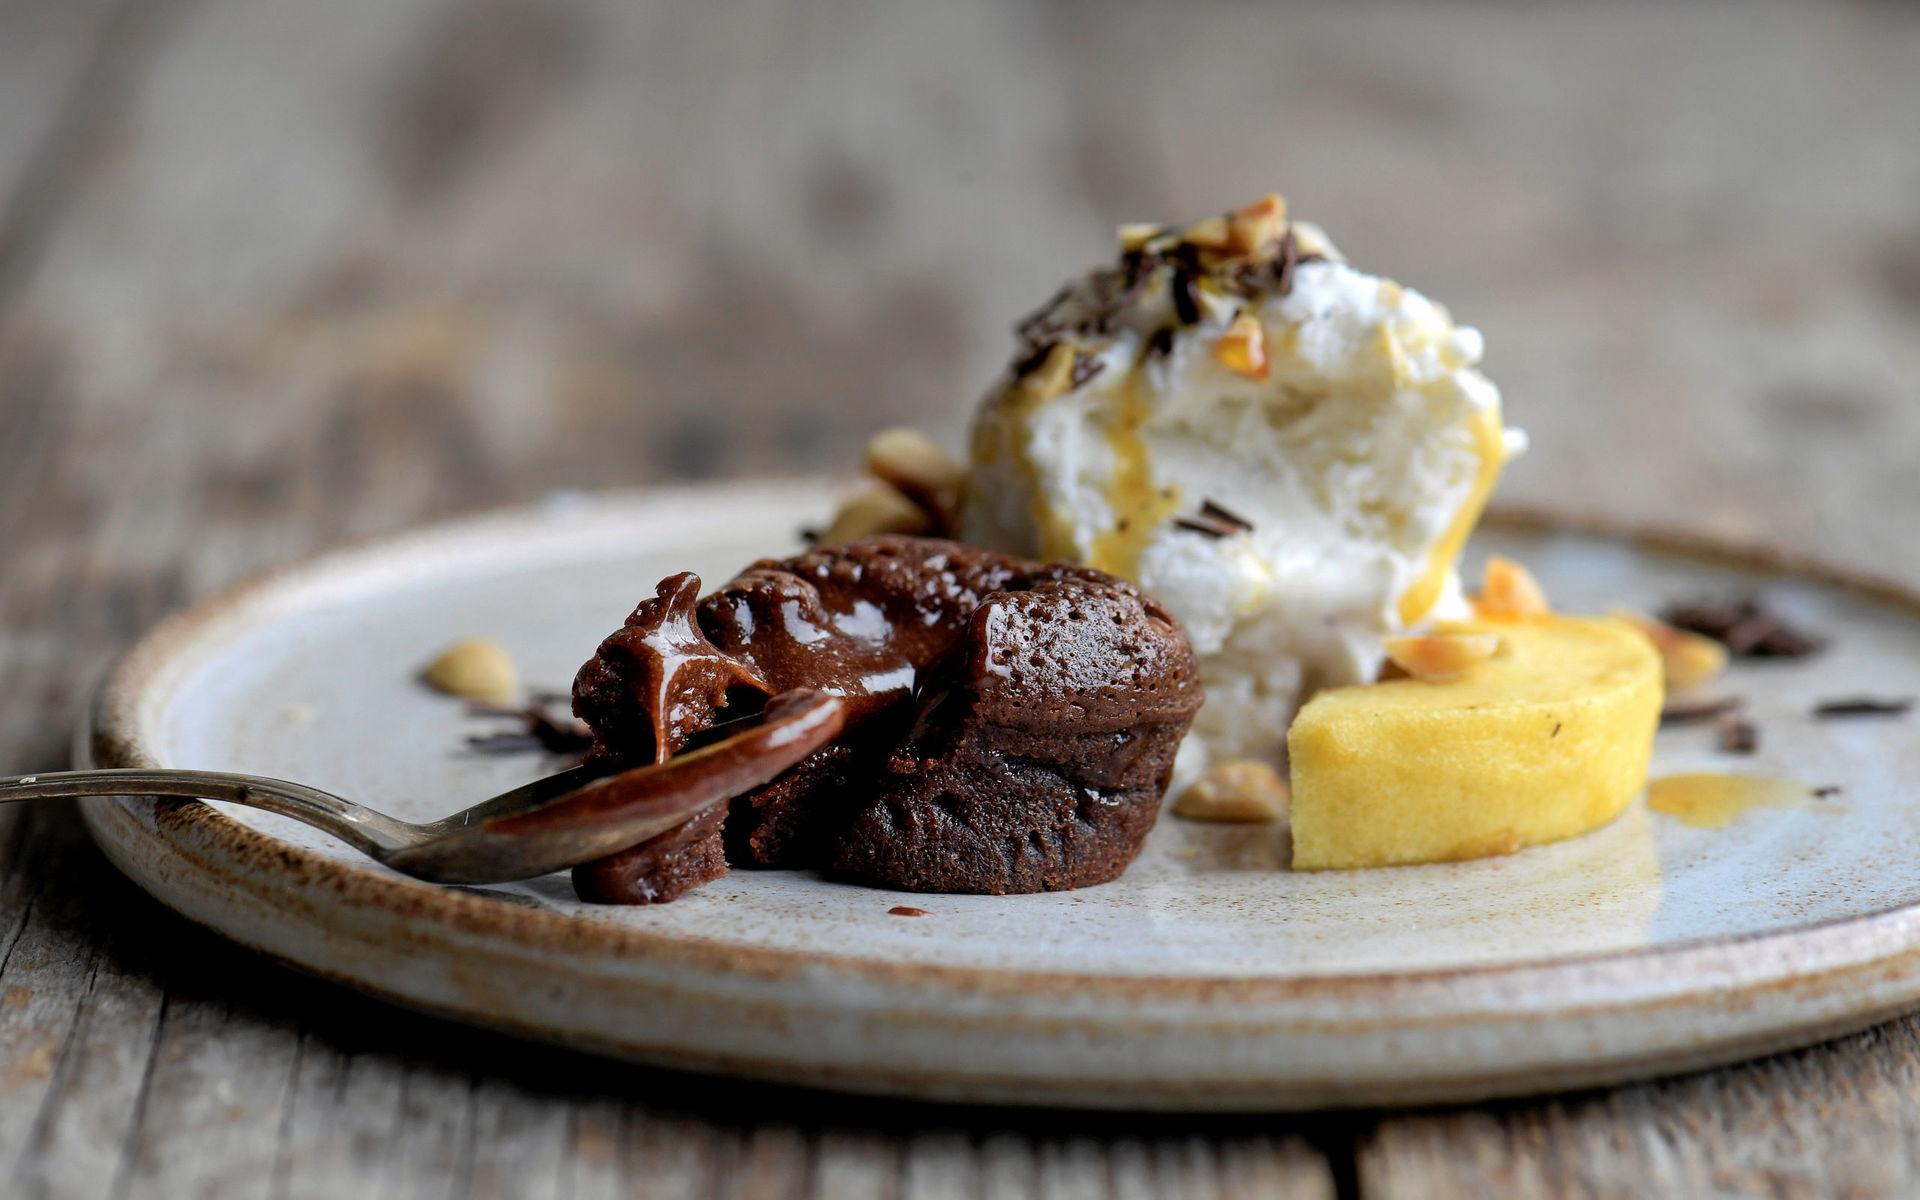  Varm chokladbakelse får sällskap av karamellbakade höstäpplen, rostade nötter och krämig vaniljglass.